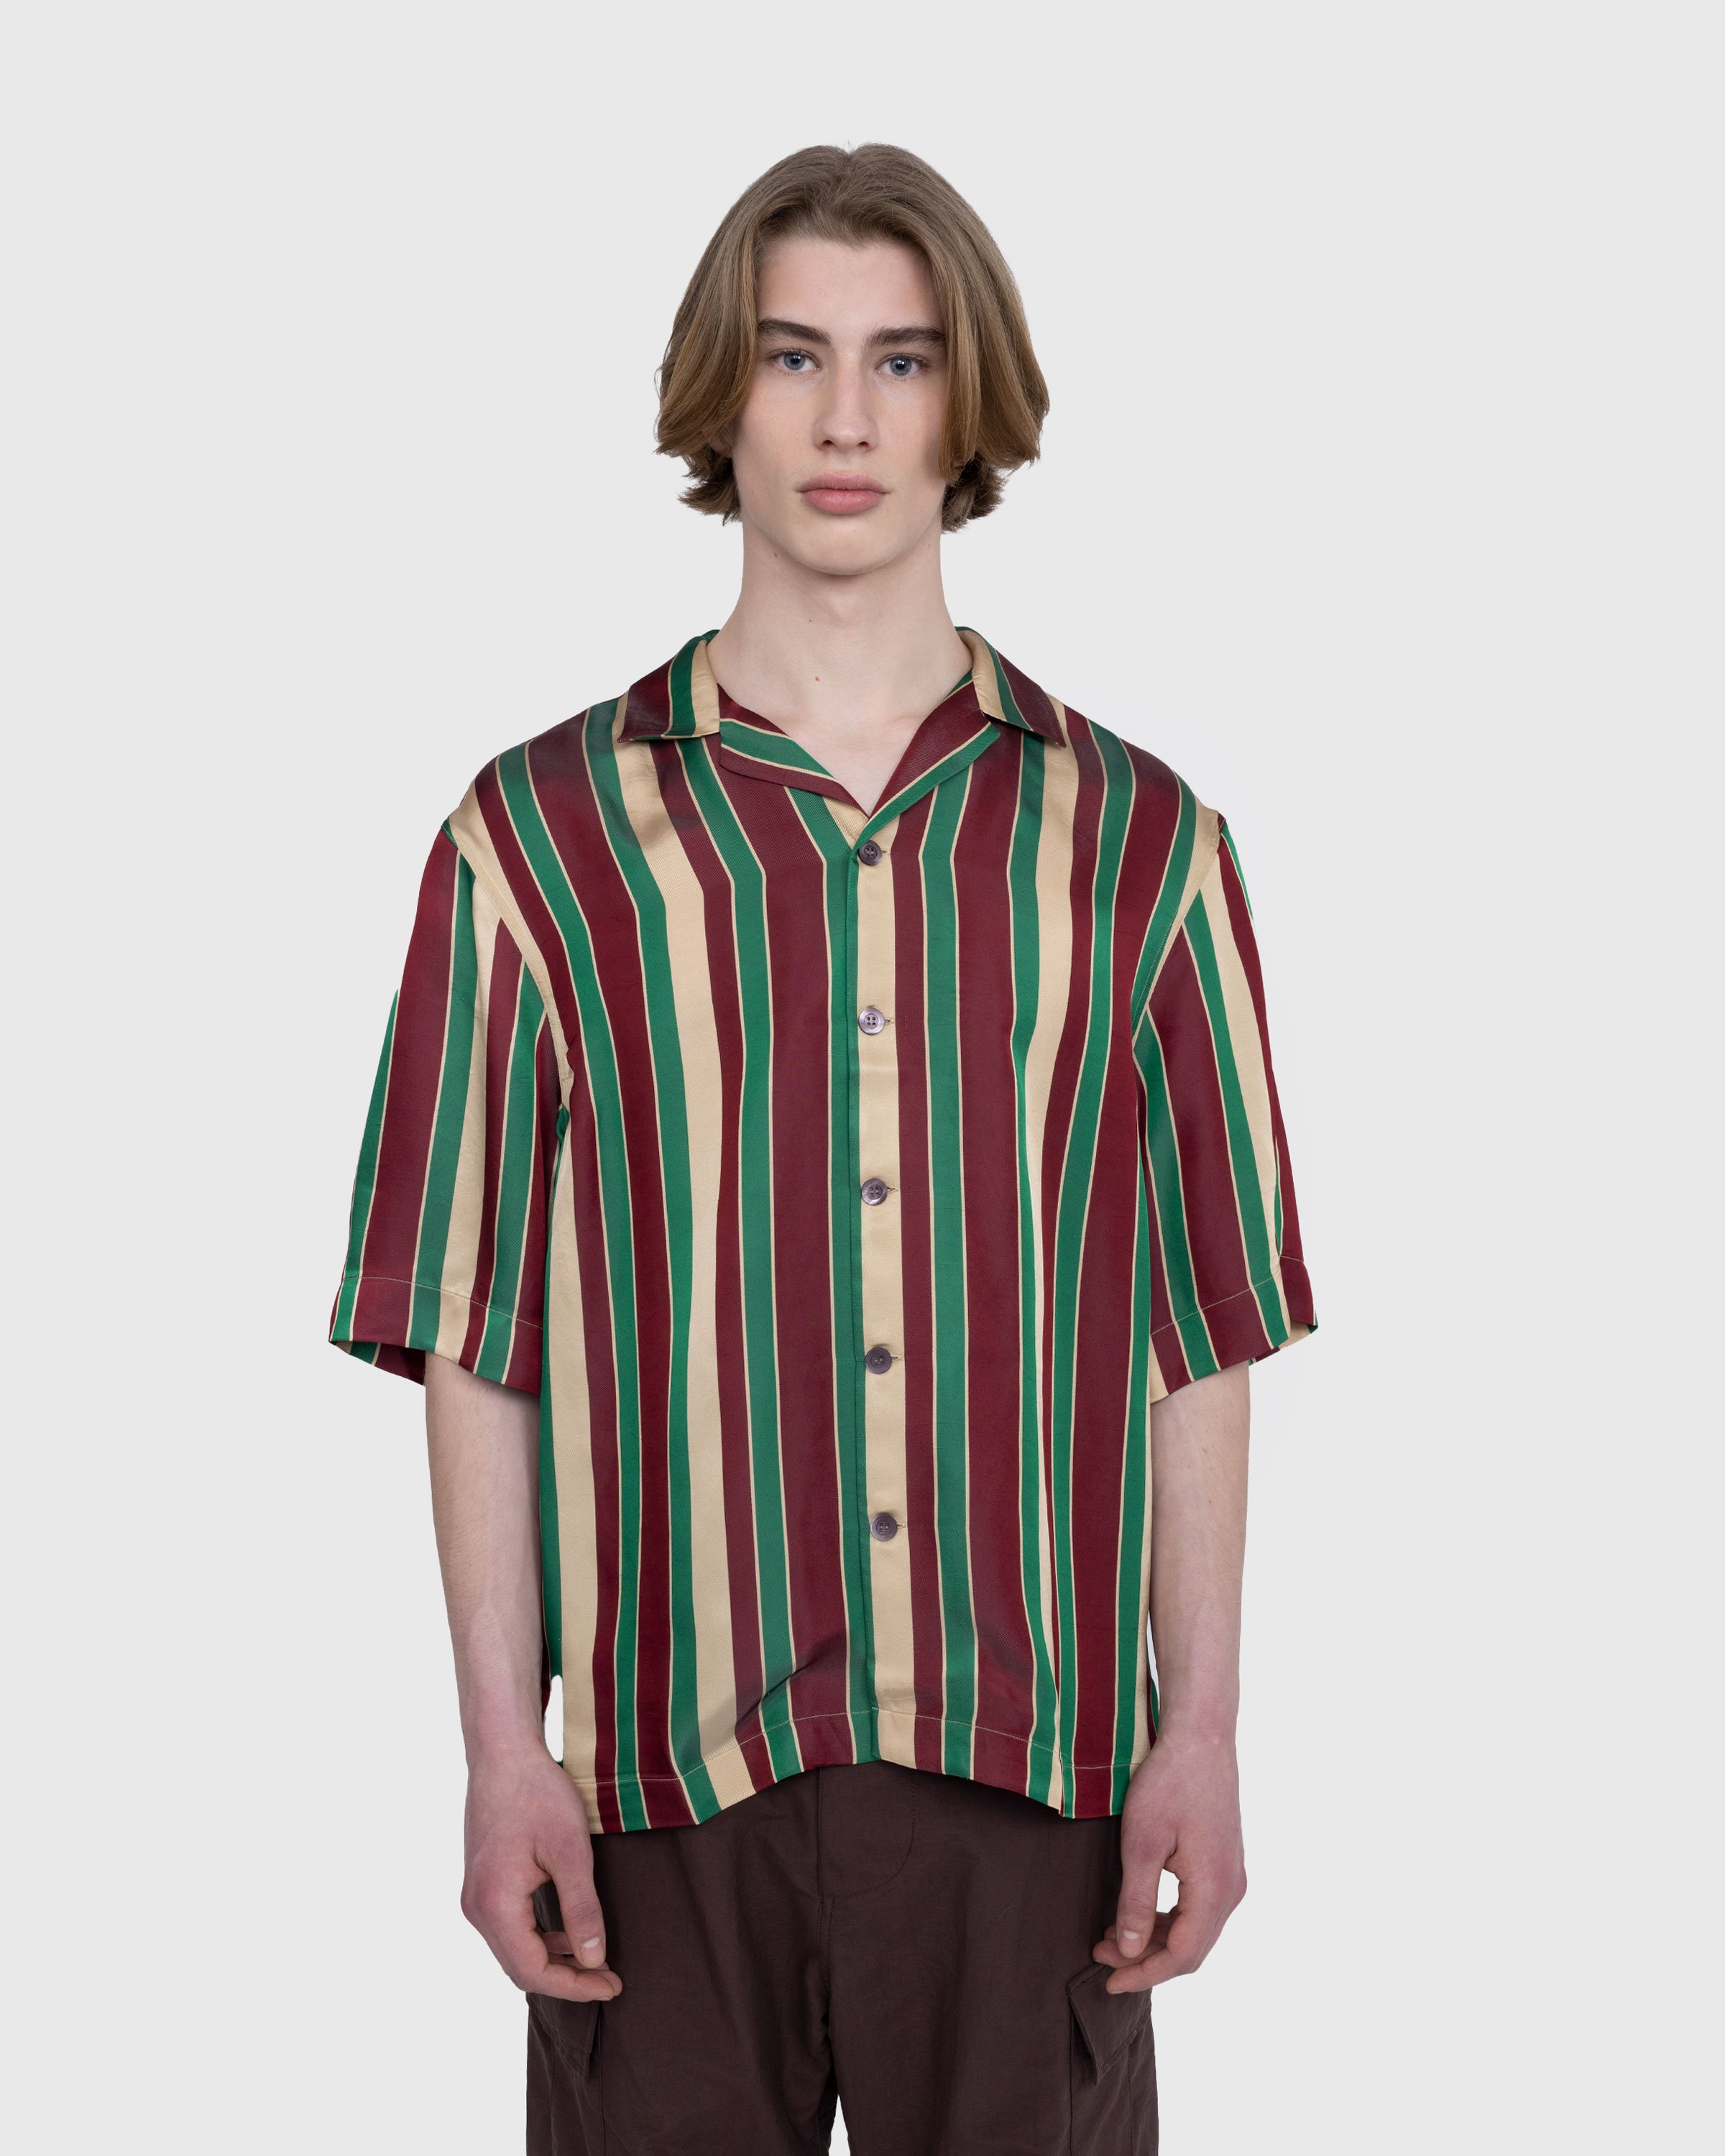 Dries van Noten - Cassi Shirt Bordeaux - Clothing - Multi - Image 2